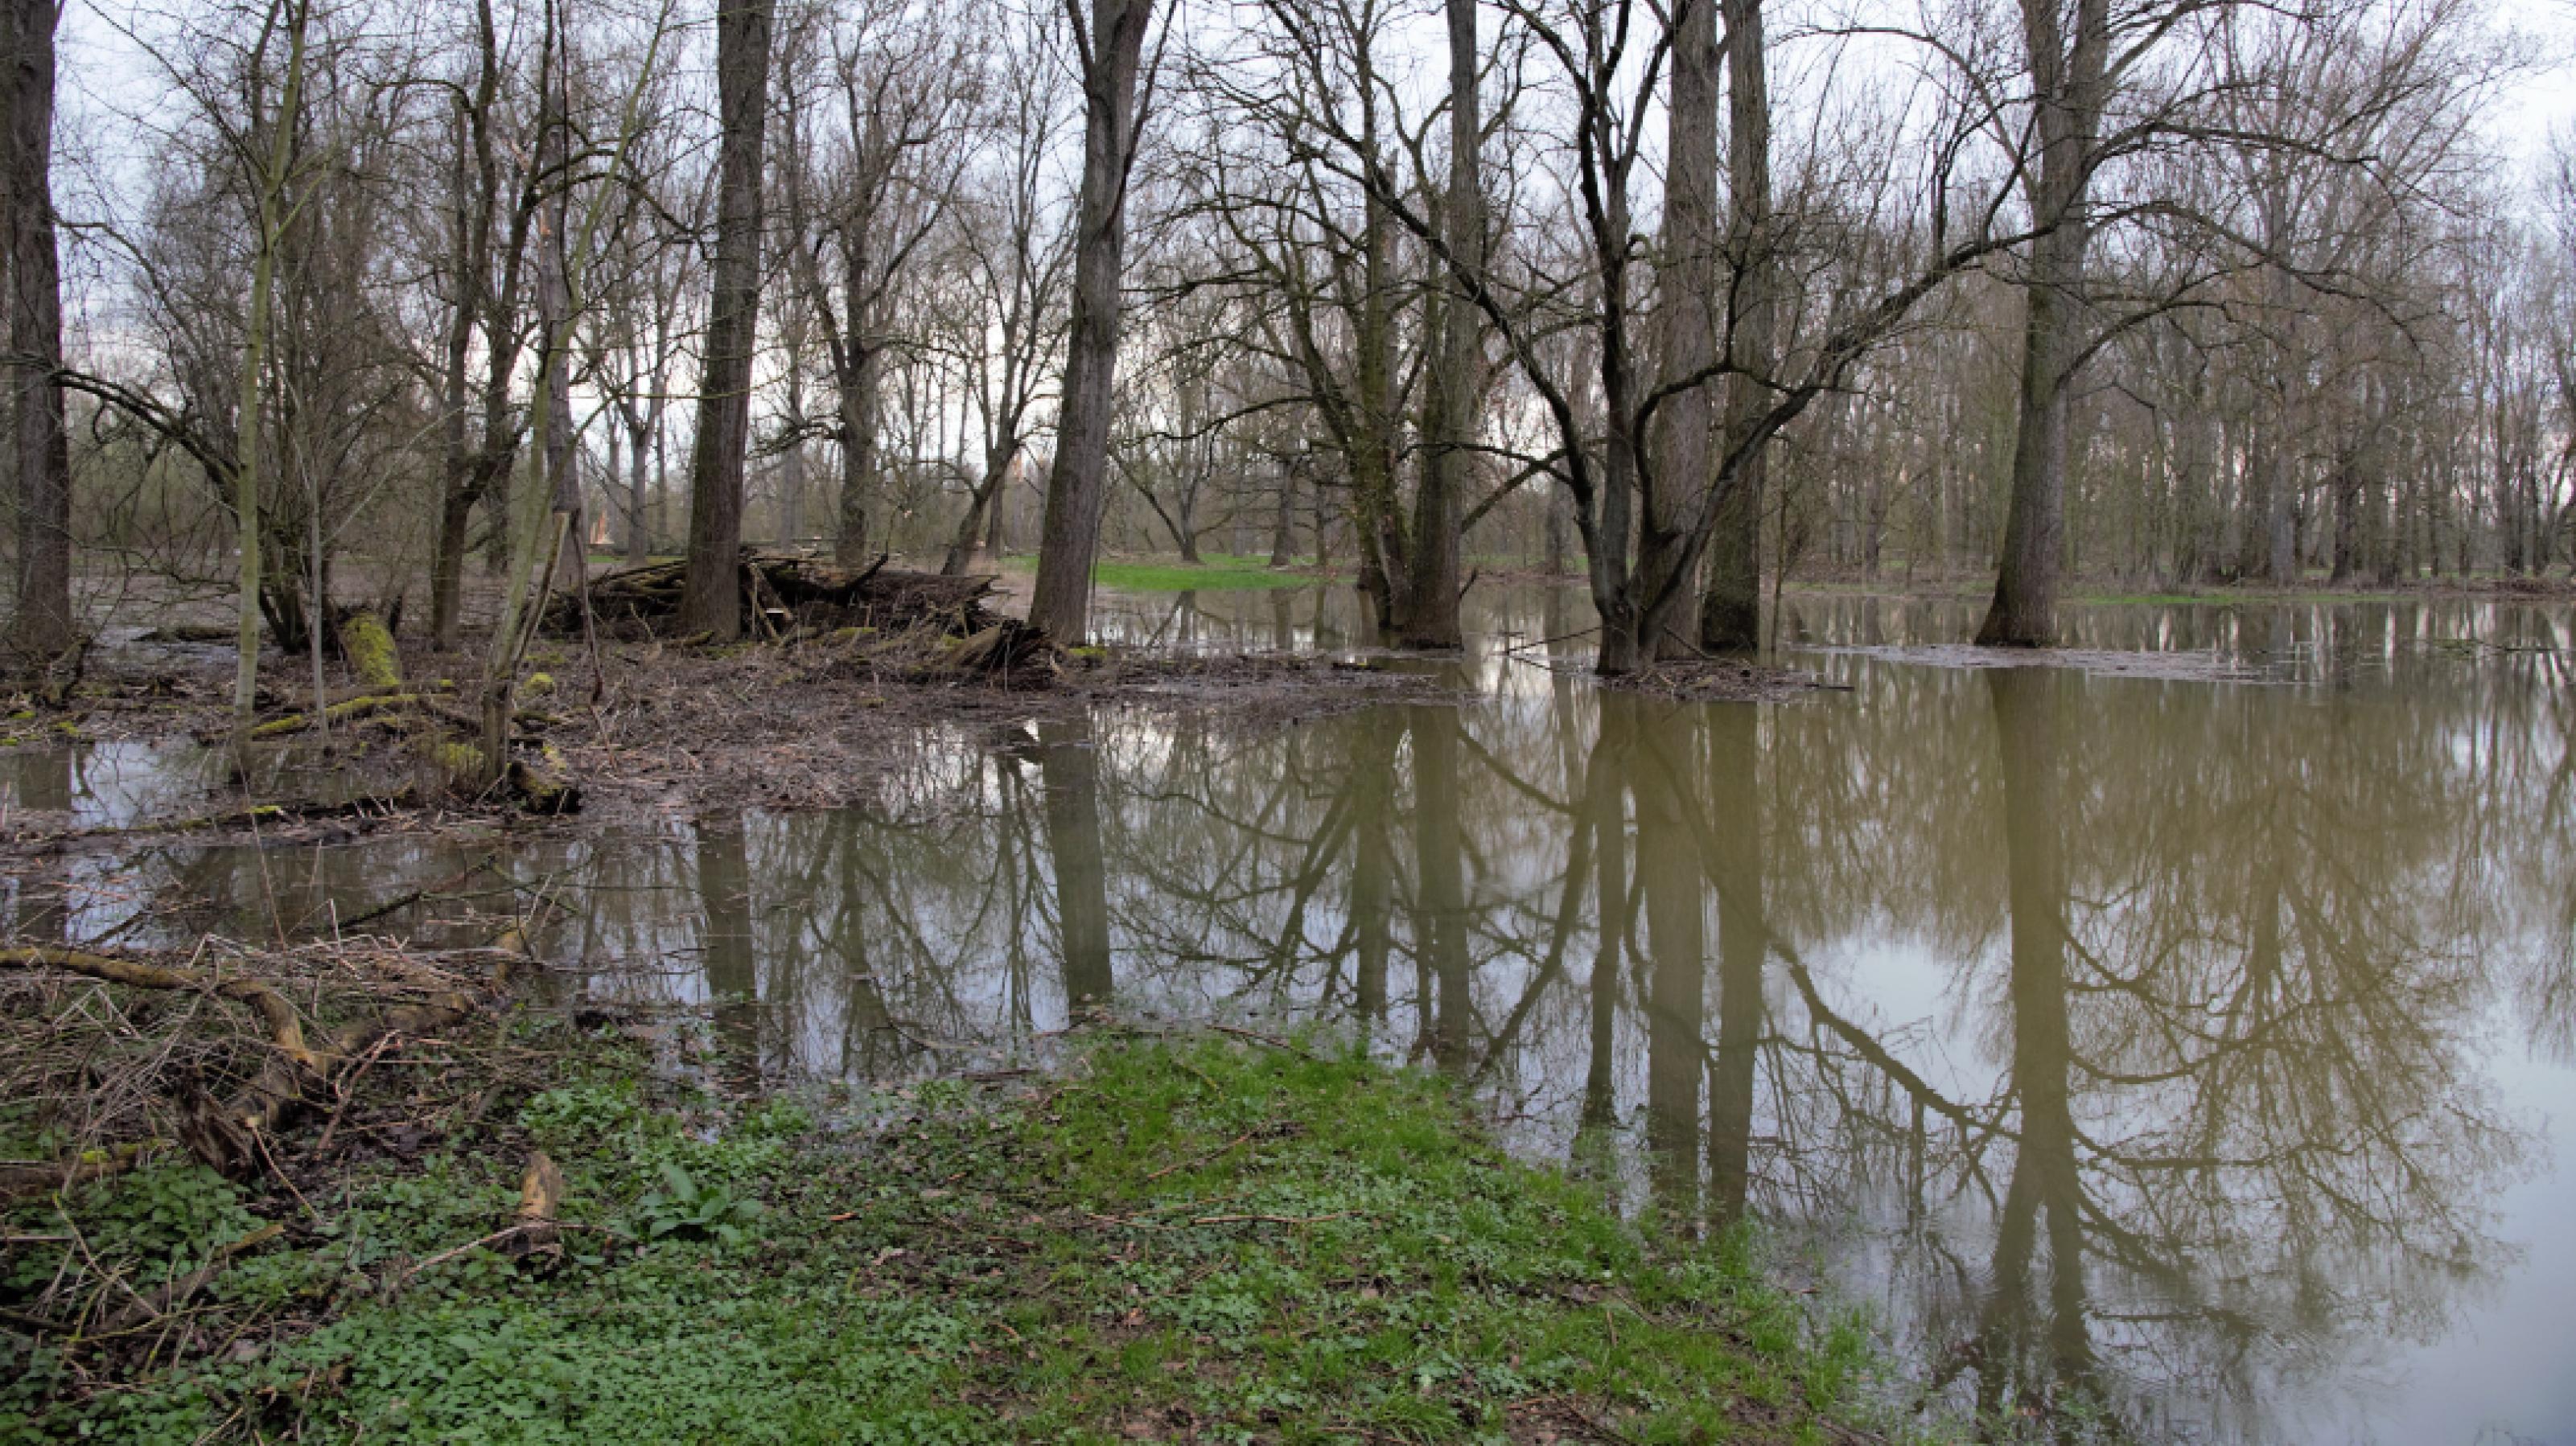 Bäume ohne Laub stehen auf einer überschwemmten Wiese und spiegeln sich im bräunlichen Wasser.